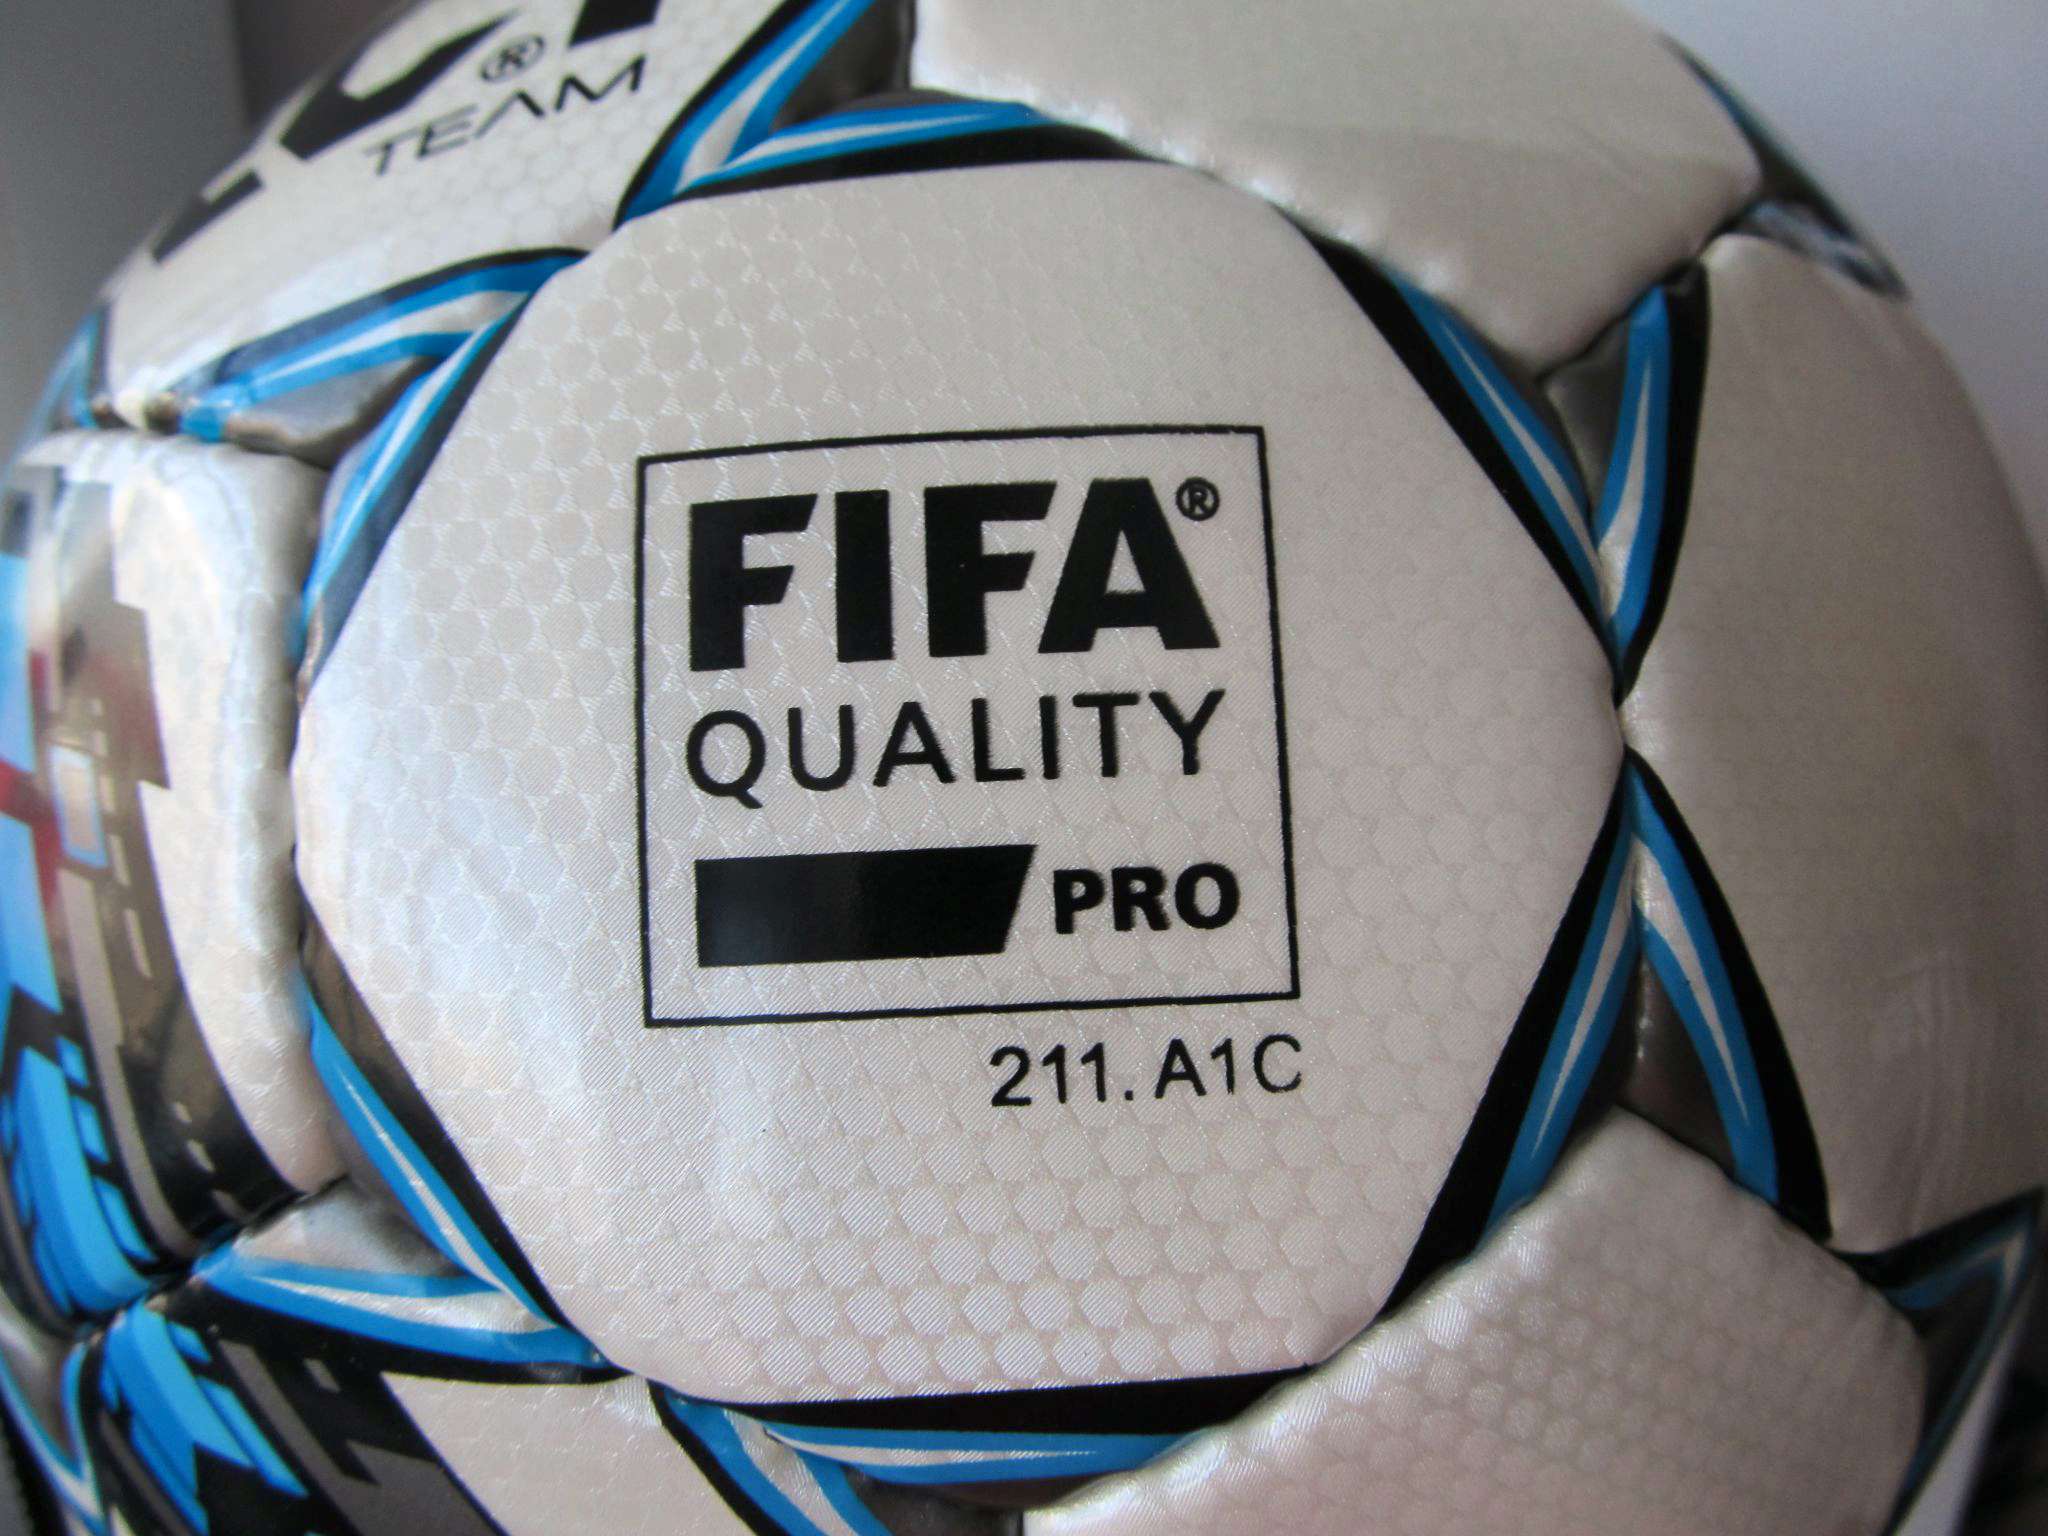 Мяч fifa quality pro. Мяч футбольный select Team FIFA approved размер 5. Мяч Селект FIFA quality 211.a.1.a. Мяч футбольный select Match IMS. Футбольный мяч select Team FIFA approved 3739.